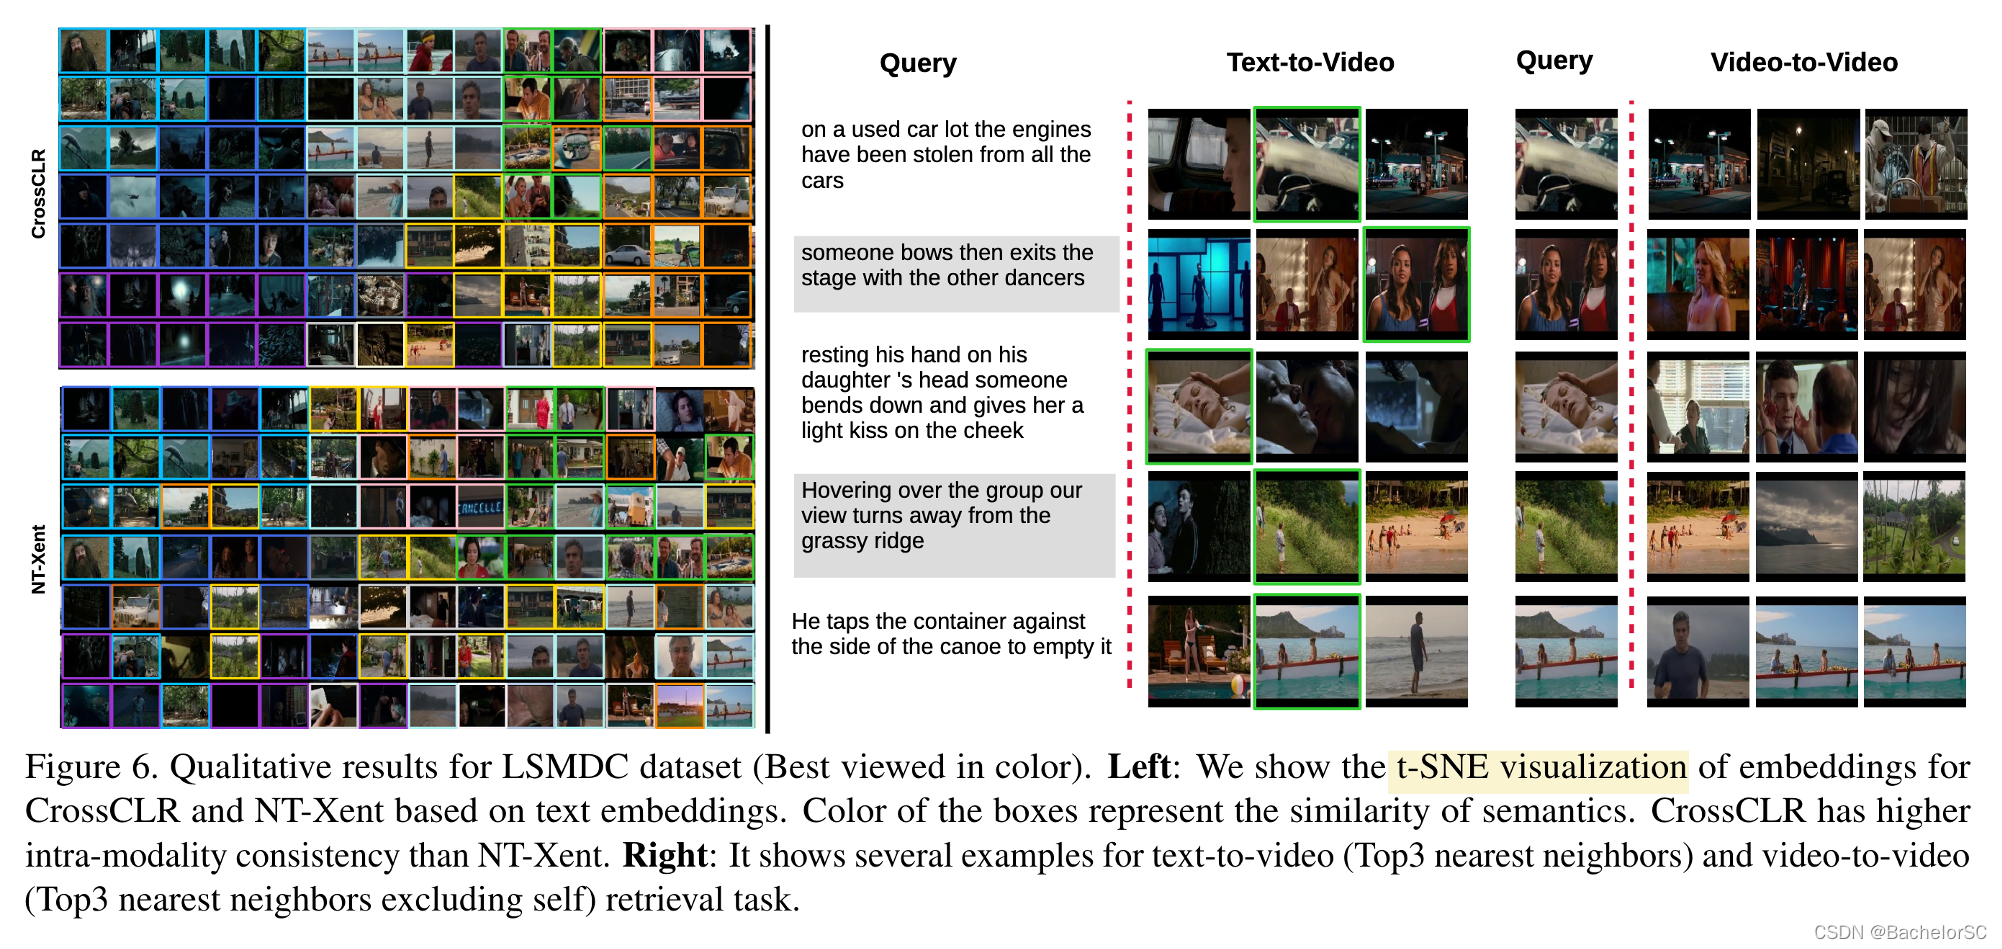 CrossCLR: Cross-modal Contrastive Learning for Multi-modal Video Representations, 2021 ICCV